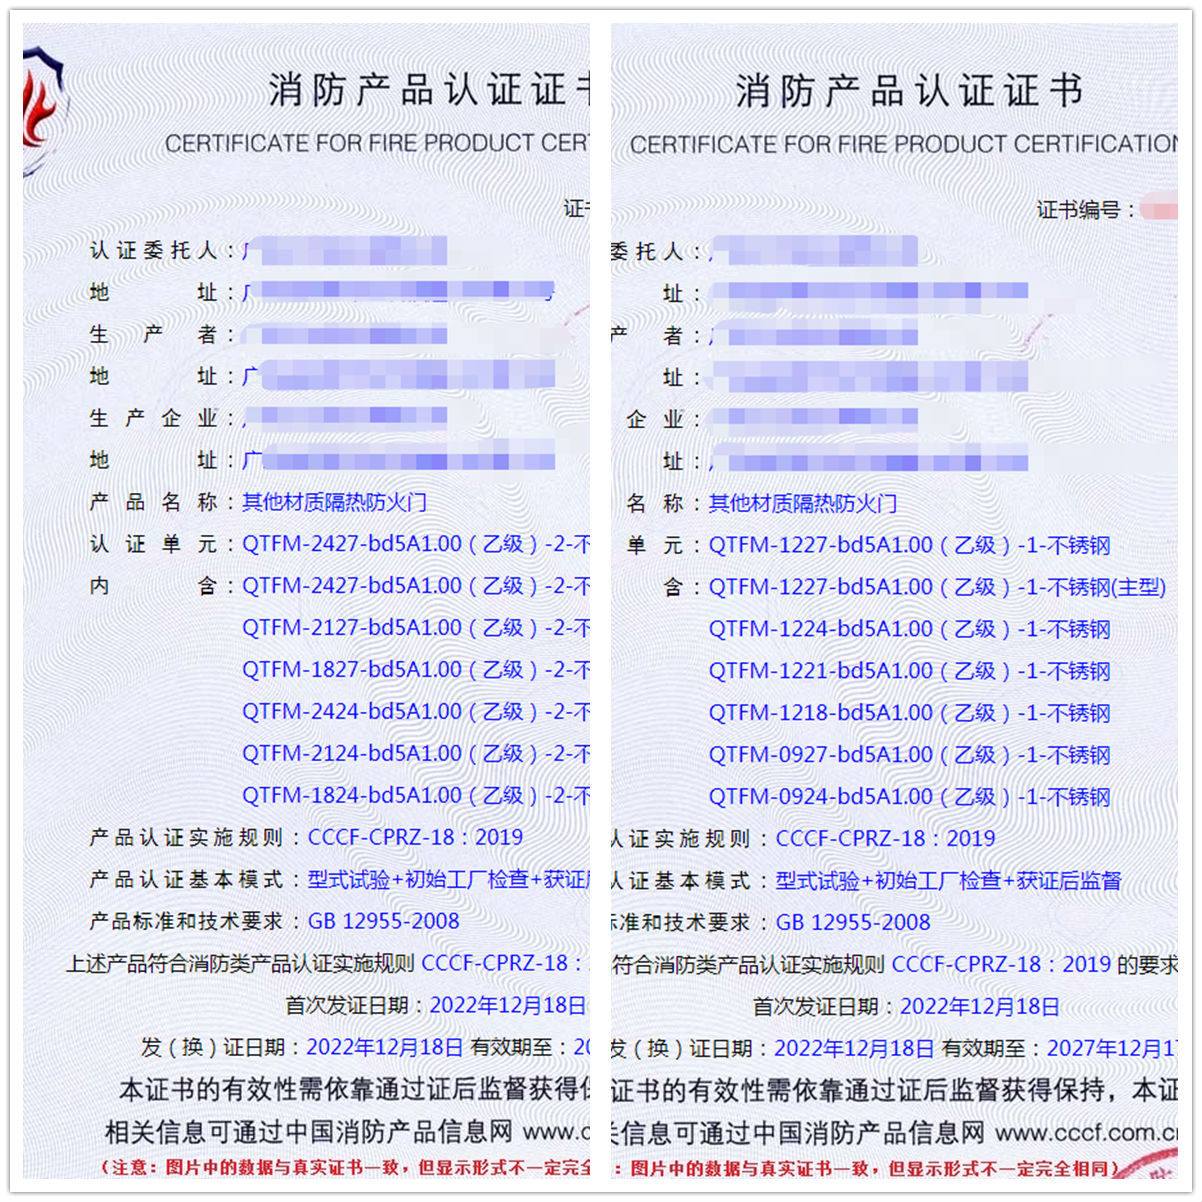 广东其他材质隔热防火门消防产品认证证书代理获证案例